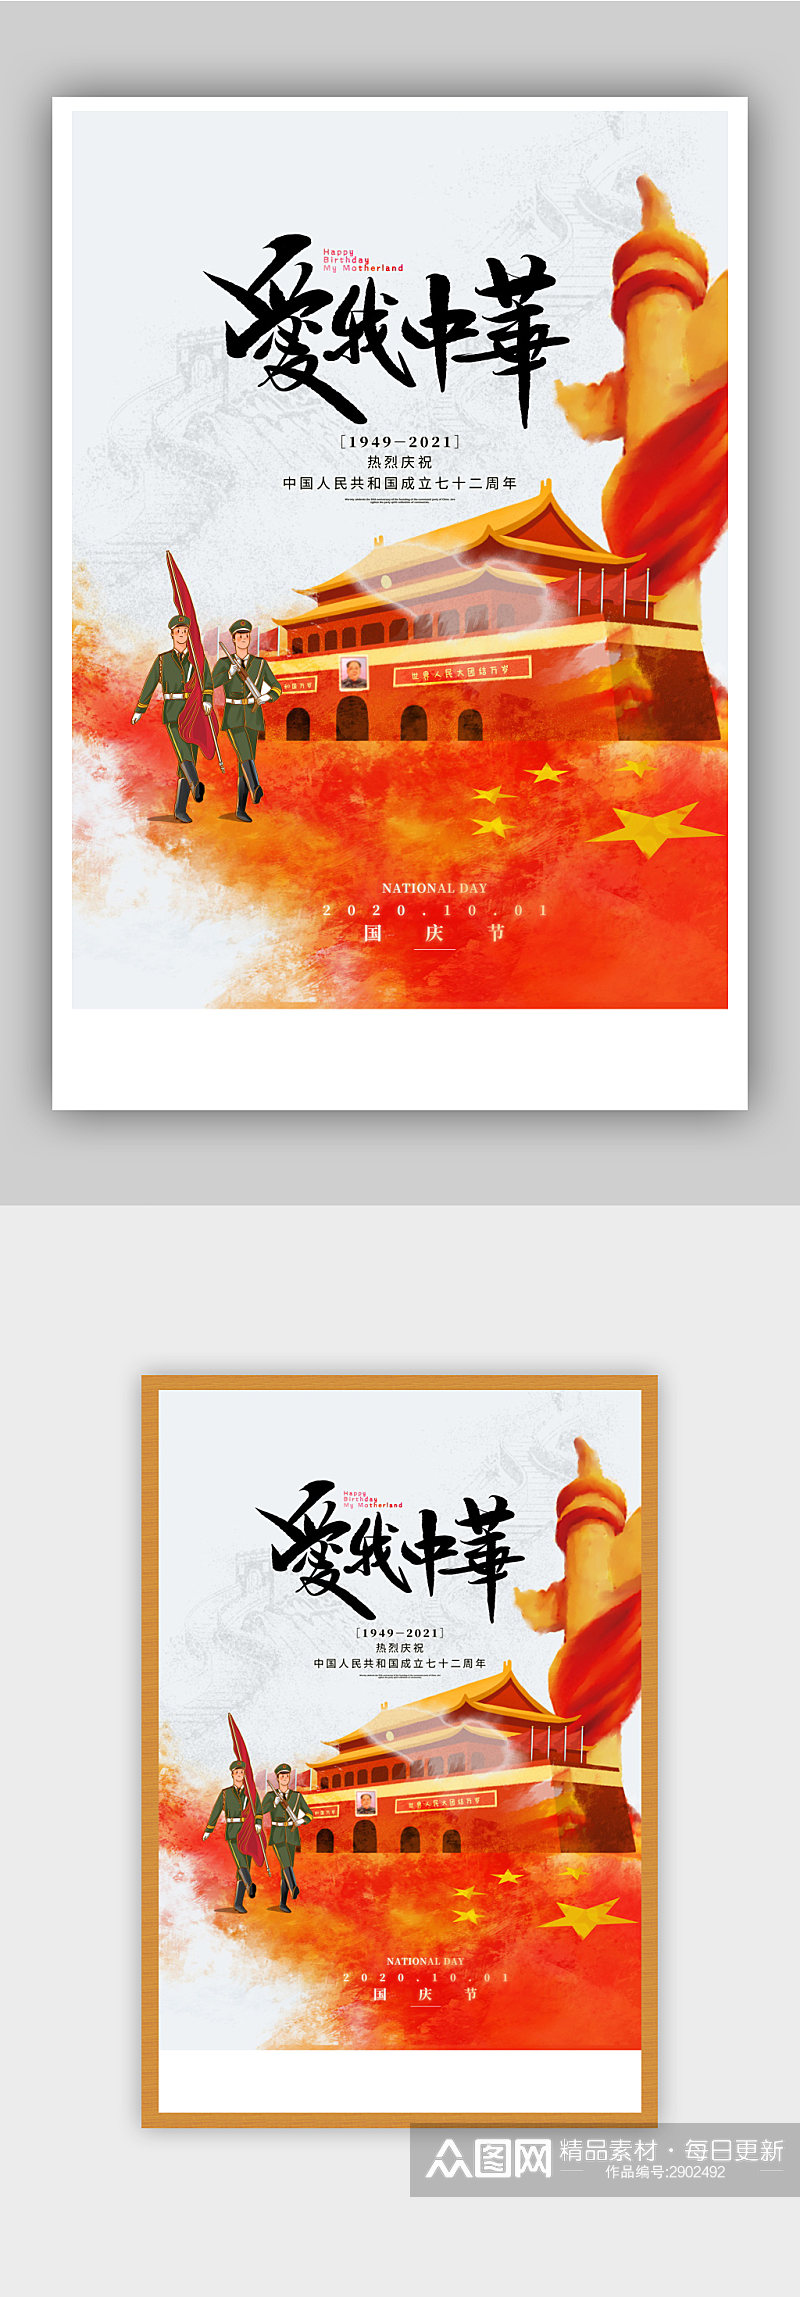 大气我爱中华国庆宣传海报素材